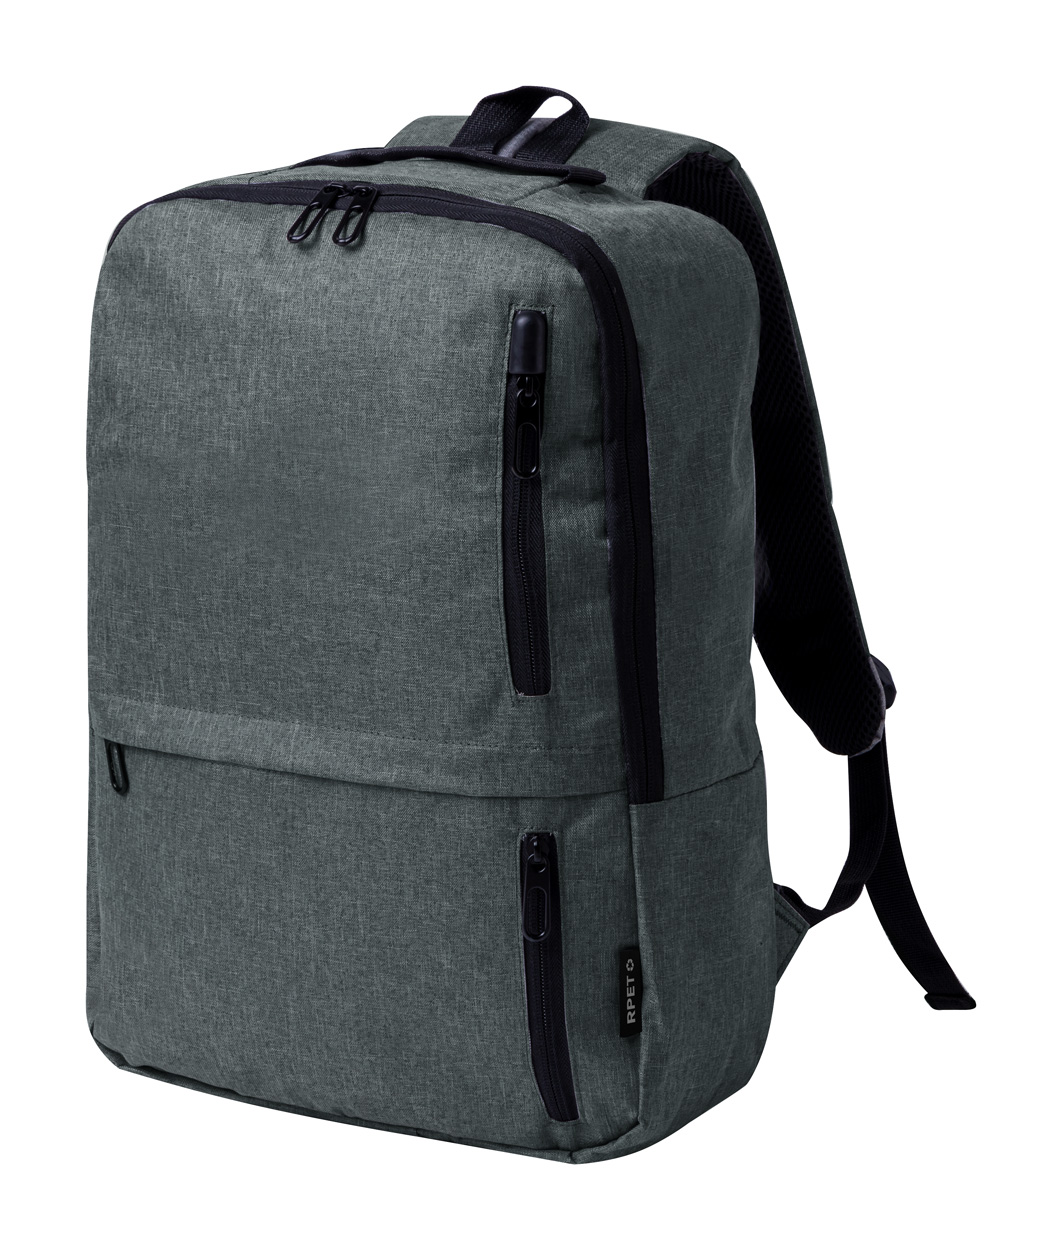 Ingria RPET backpack - Grau